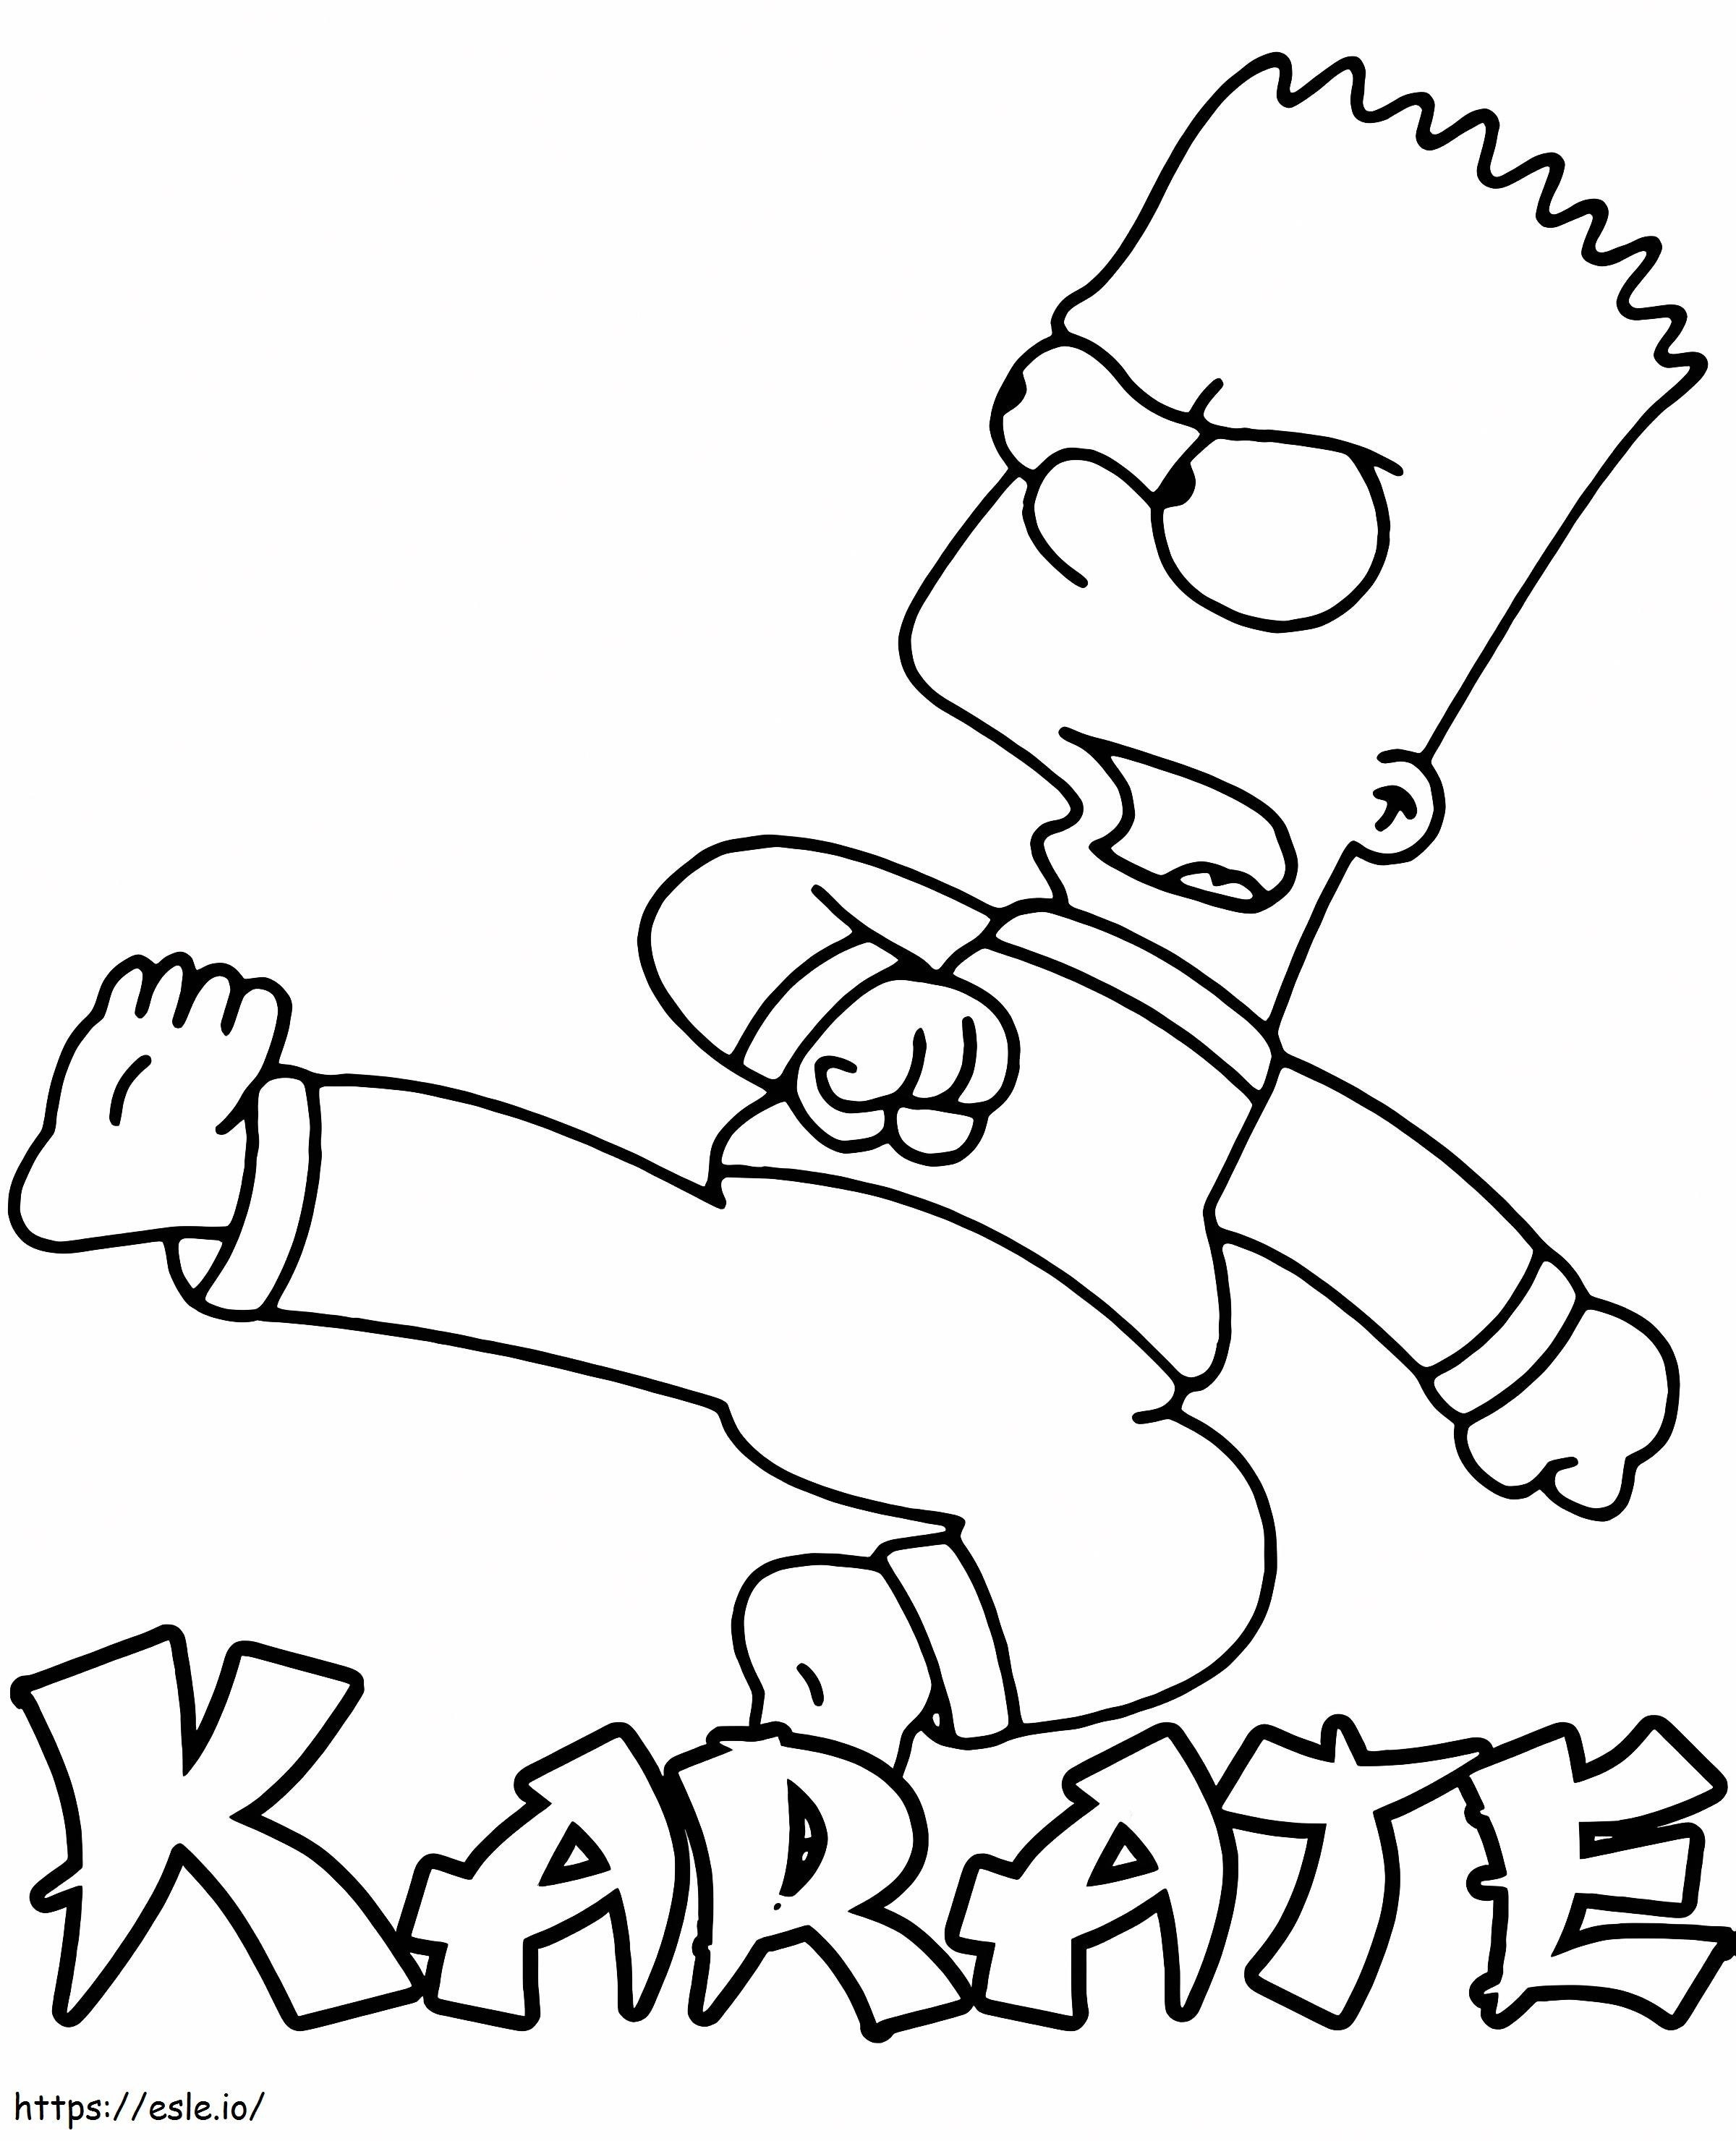 Bart Simpson karate kifestő